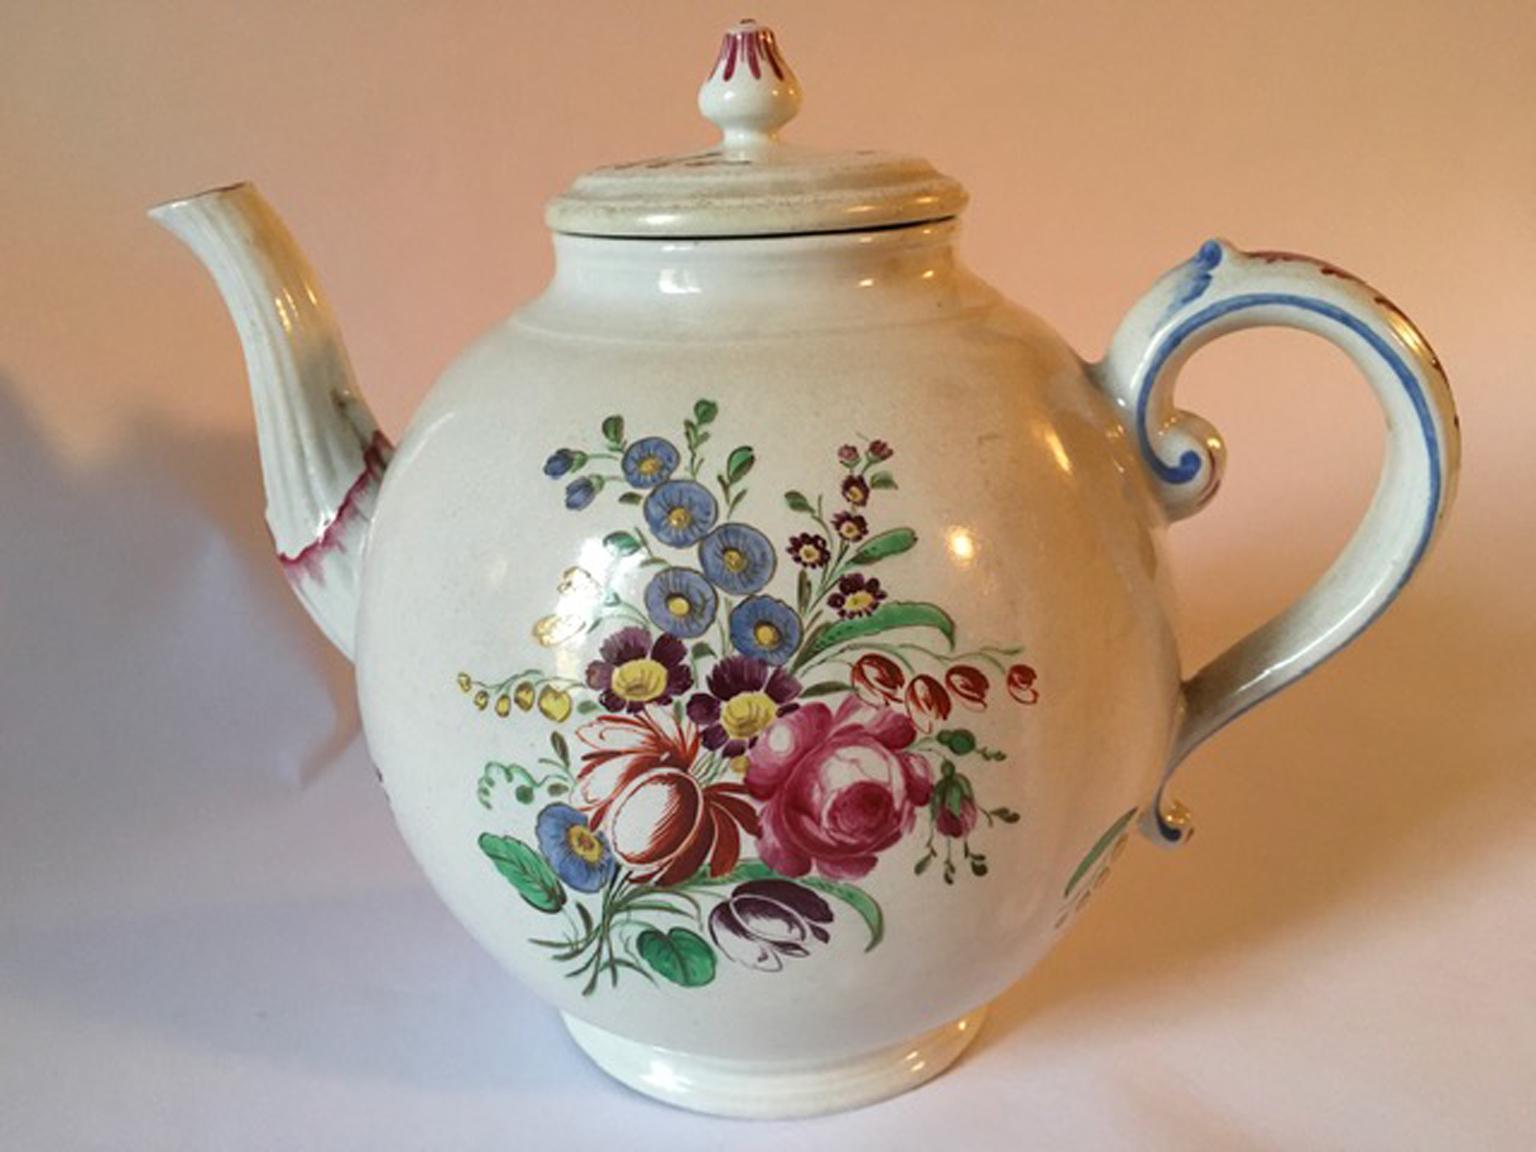 Doccia, Richard Ginori 1750 Porzellan-Teekanne mit mehrfarbigen floralen Zeichnungen,
Italien.
Diese Teekanne aus Porzellan mit mehrfarbiger Blumenzeichnung ist ein elegantes Stück, das eine Sammlung von Servicestücken bereichert.
Mit